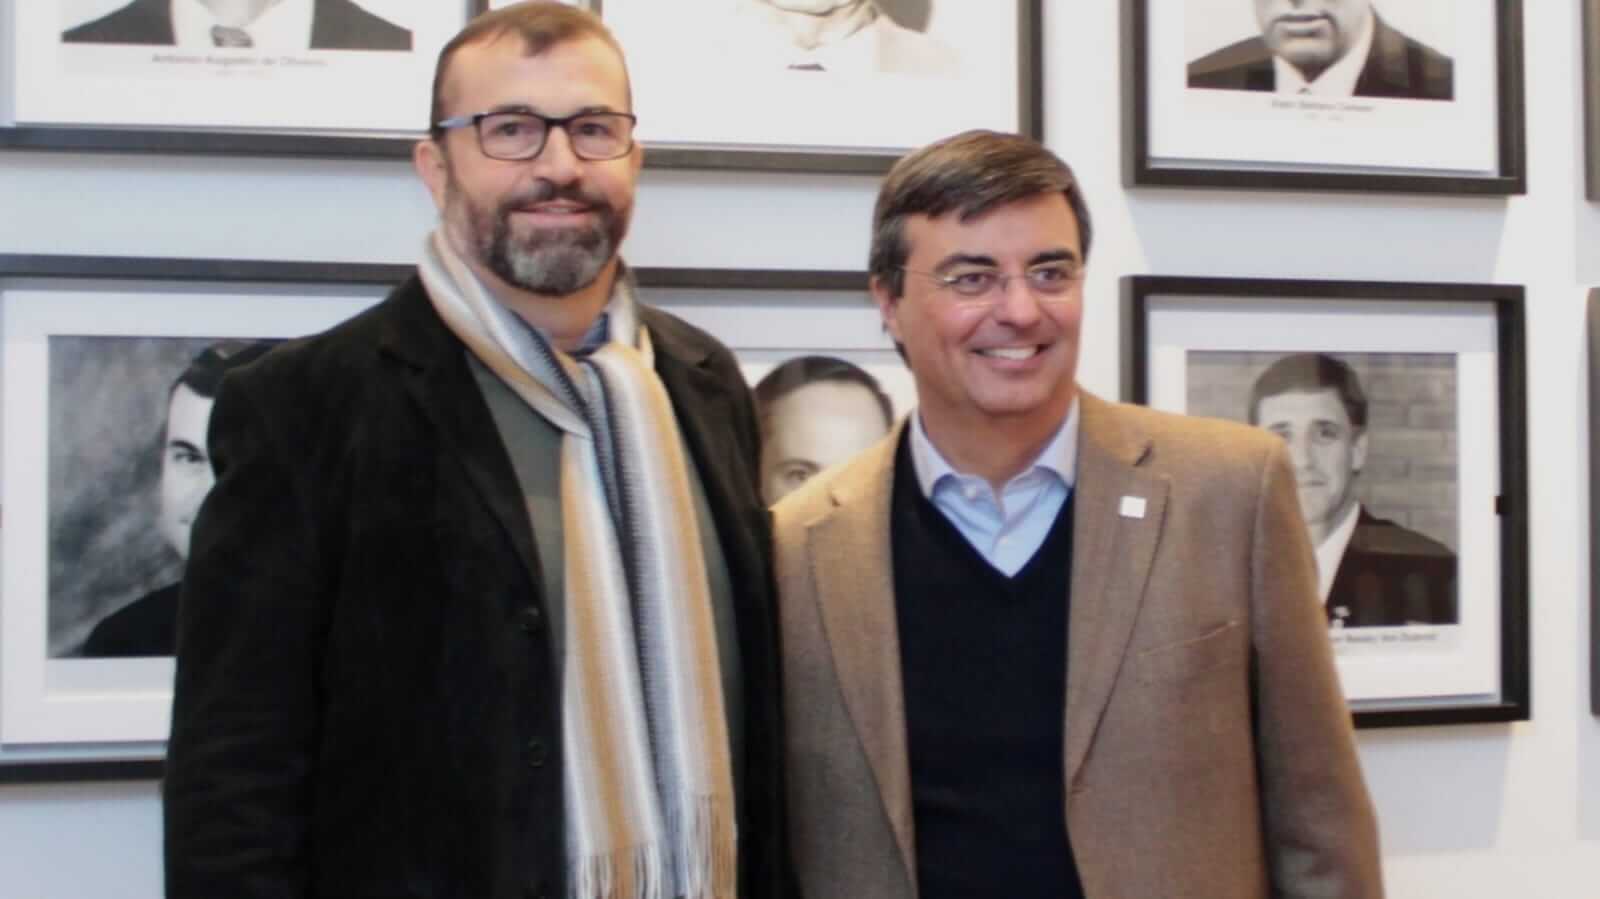 Rafael Cervone (à direita) é o presidente da CIESP; Marcelo Cereser (à esquerda) é o diretor titular do CIESP Jundiaí